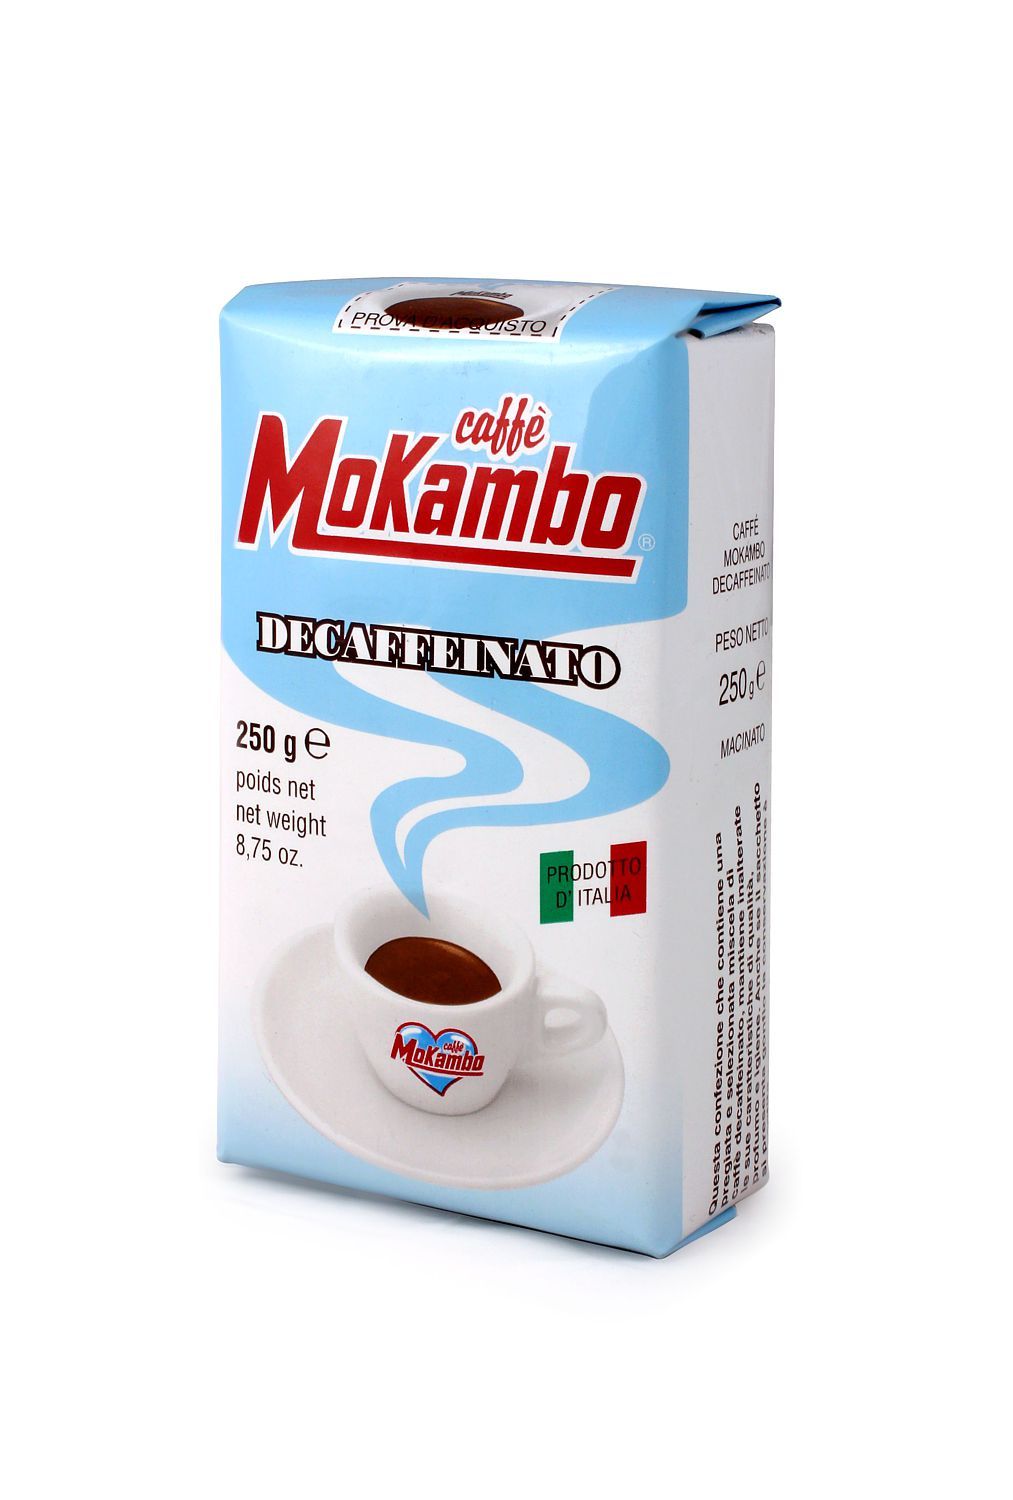 Decaf Coffee, Mokambo